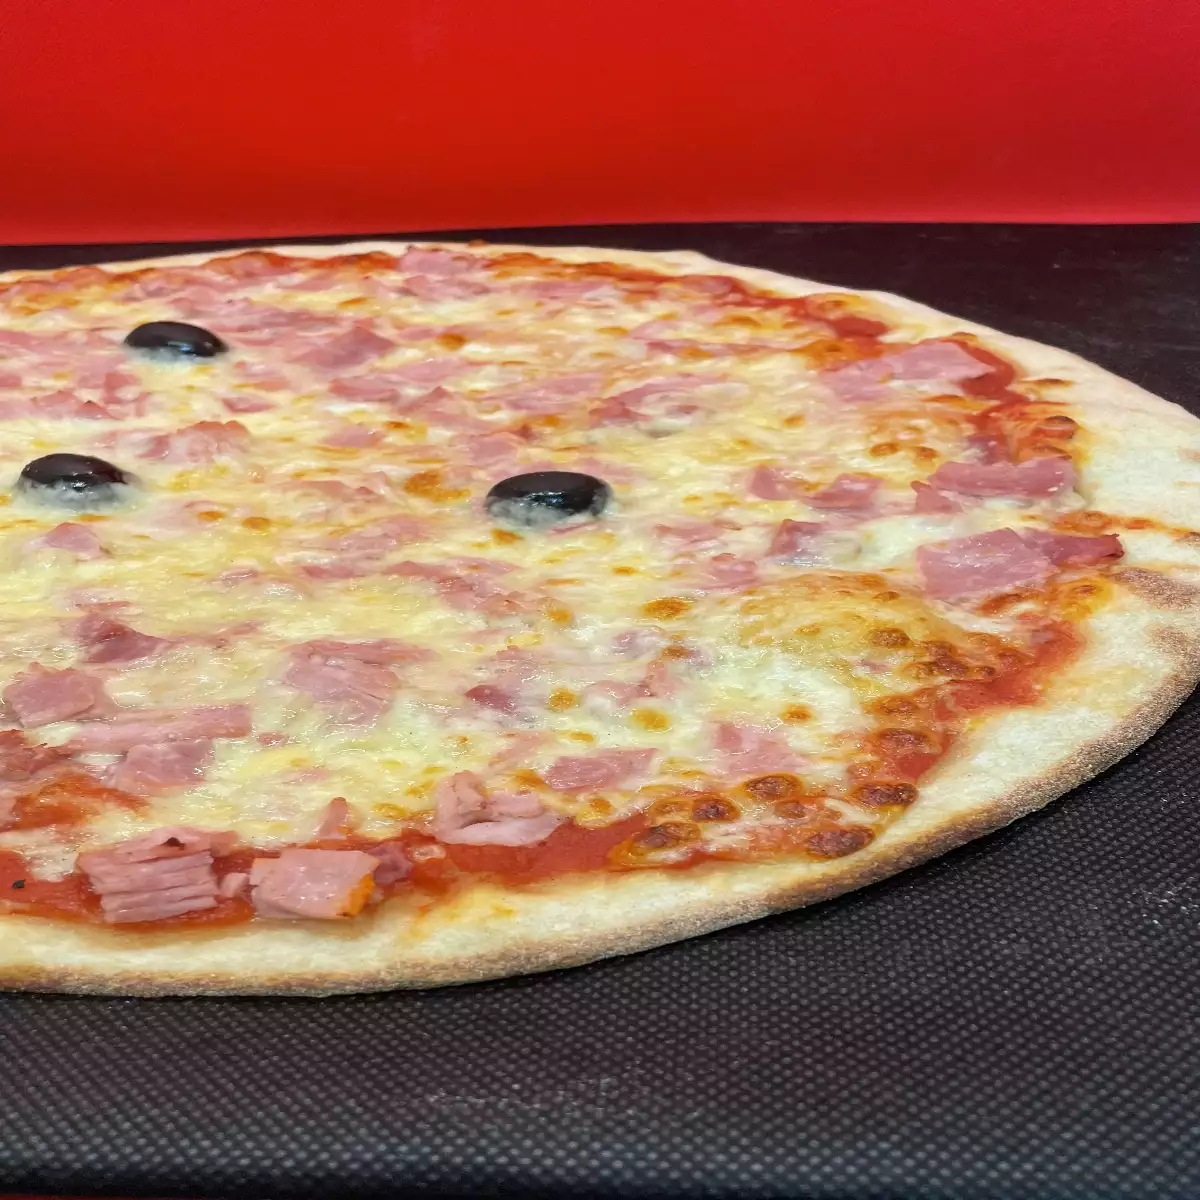 CAPRICCIOSA pizza